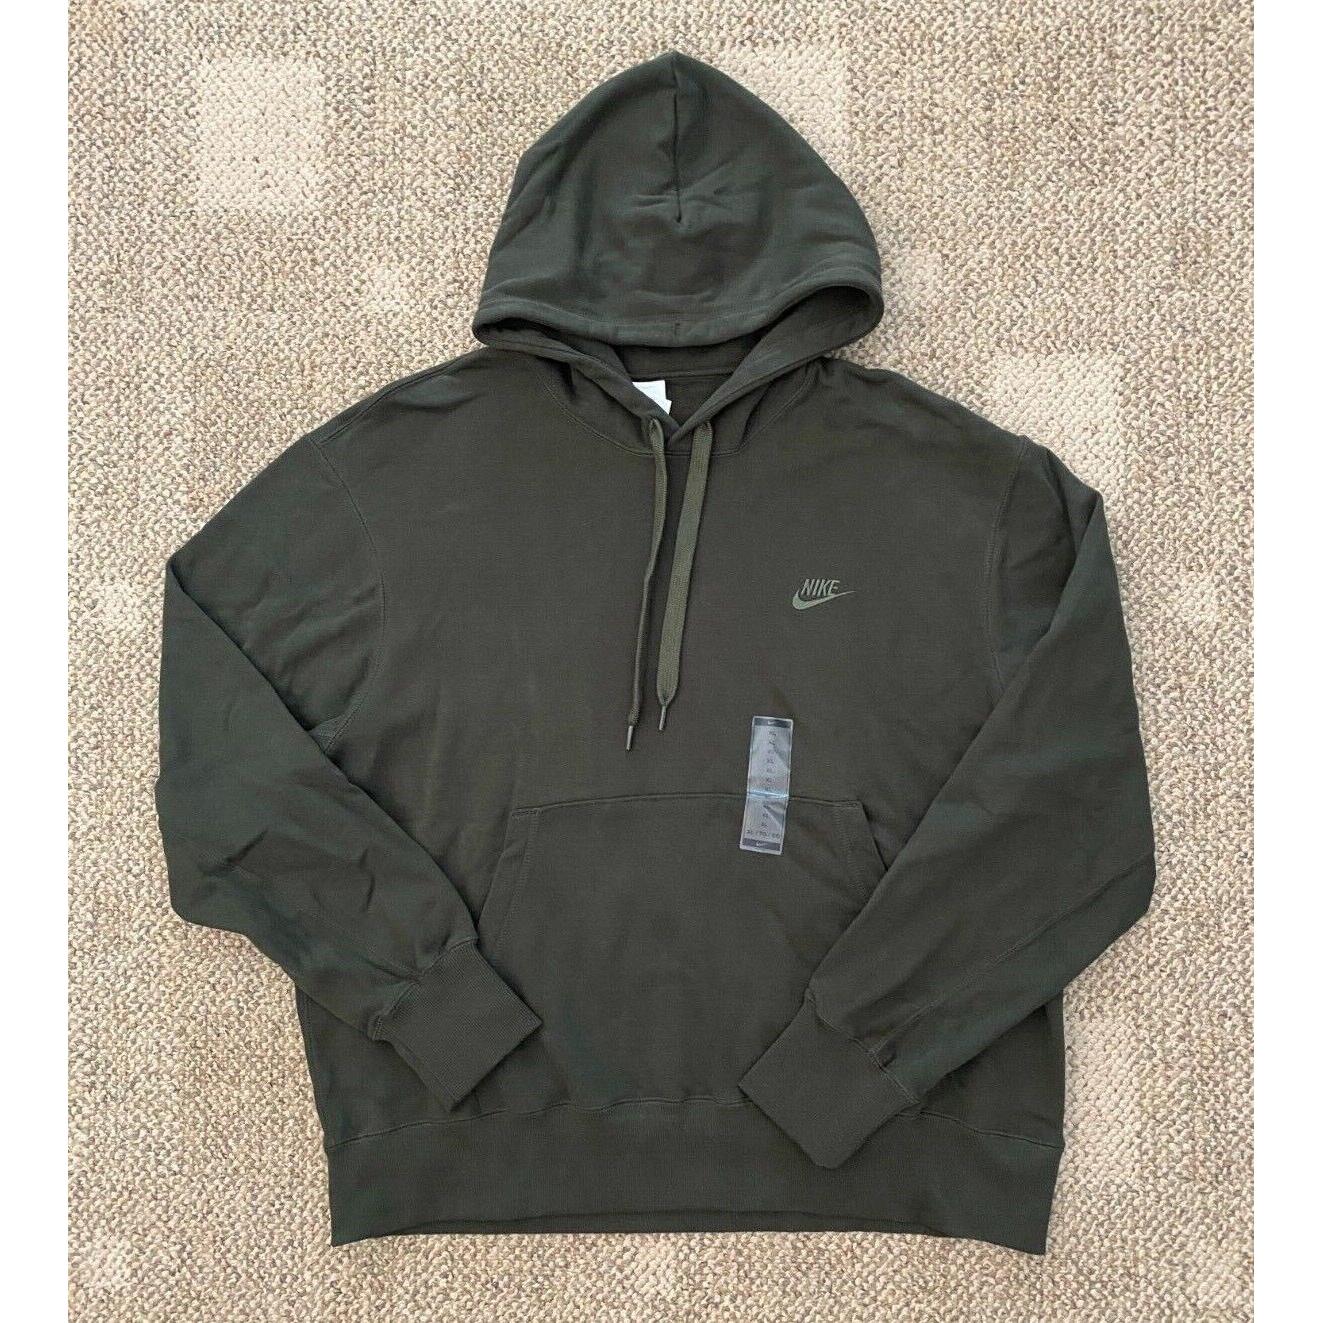 Mens L Nike Sportswear Classic Fleece Pullover Hoodie Sweatshirt Sequoia DA0023